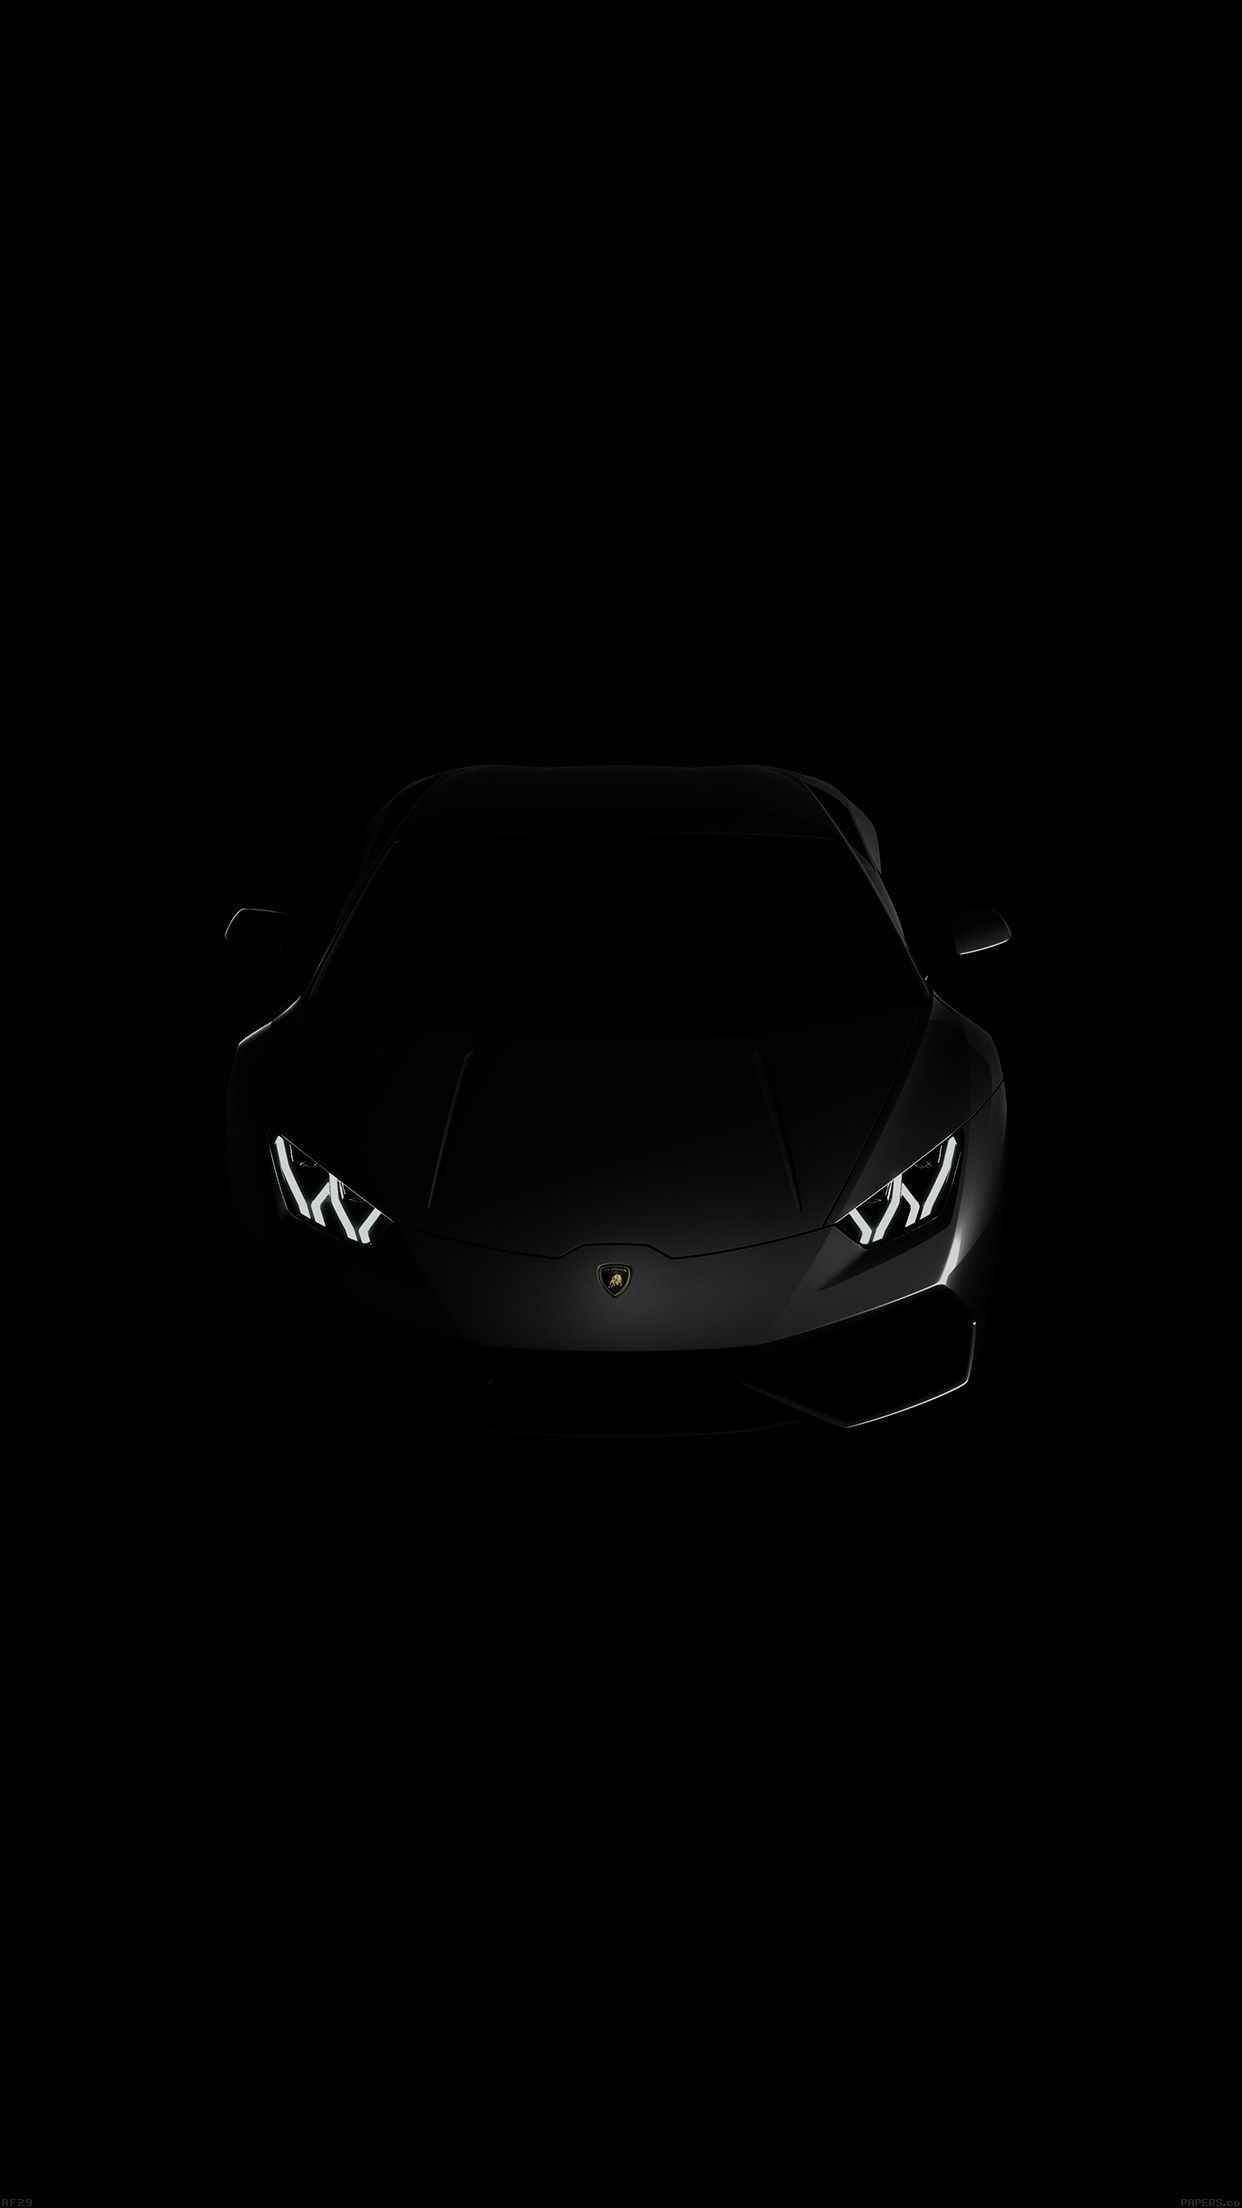 Lamborghini Logo Wallpaper For iPhone - image #436